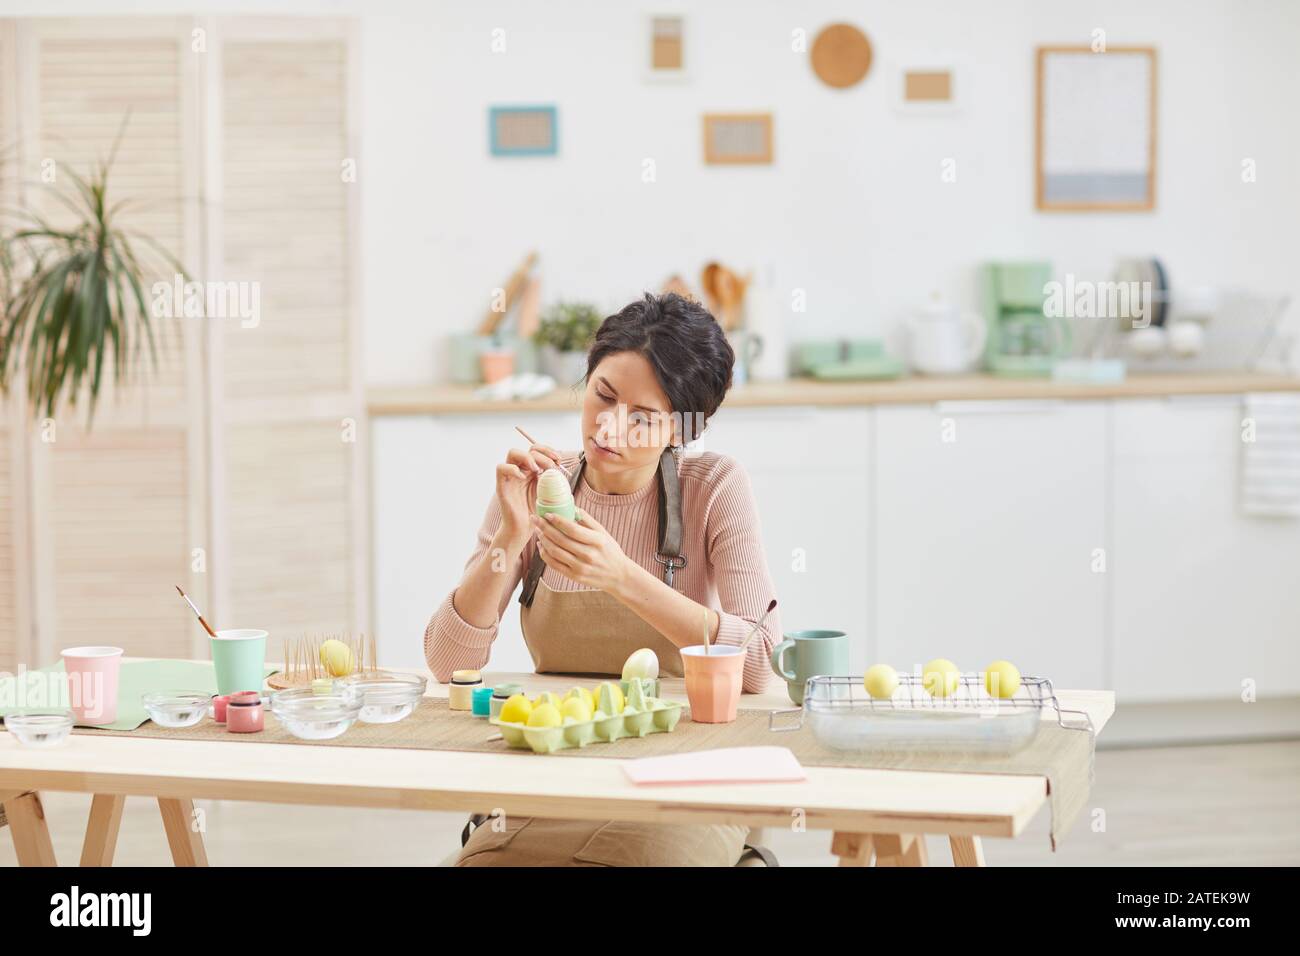 Weitwinkelansicht bei eleganter, erwachsener Frau, die Ostern Eier in Pastellfarben malt, während sie in Küche oder Kunststudio am Tisch sitzt, Kopierer Stockfoto